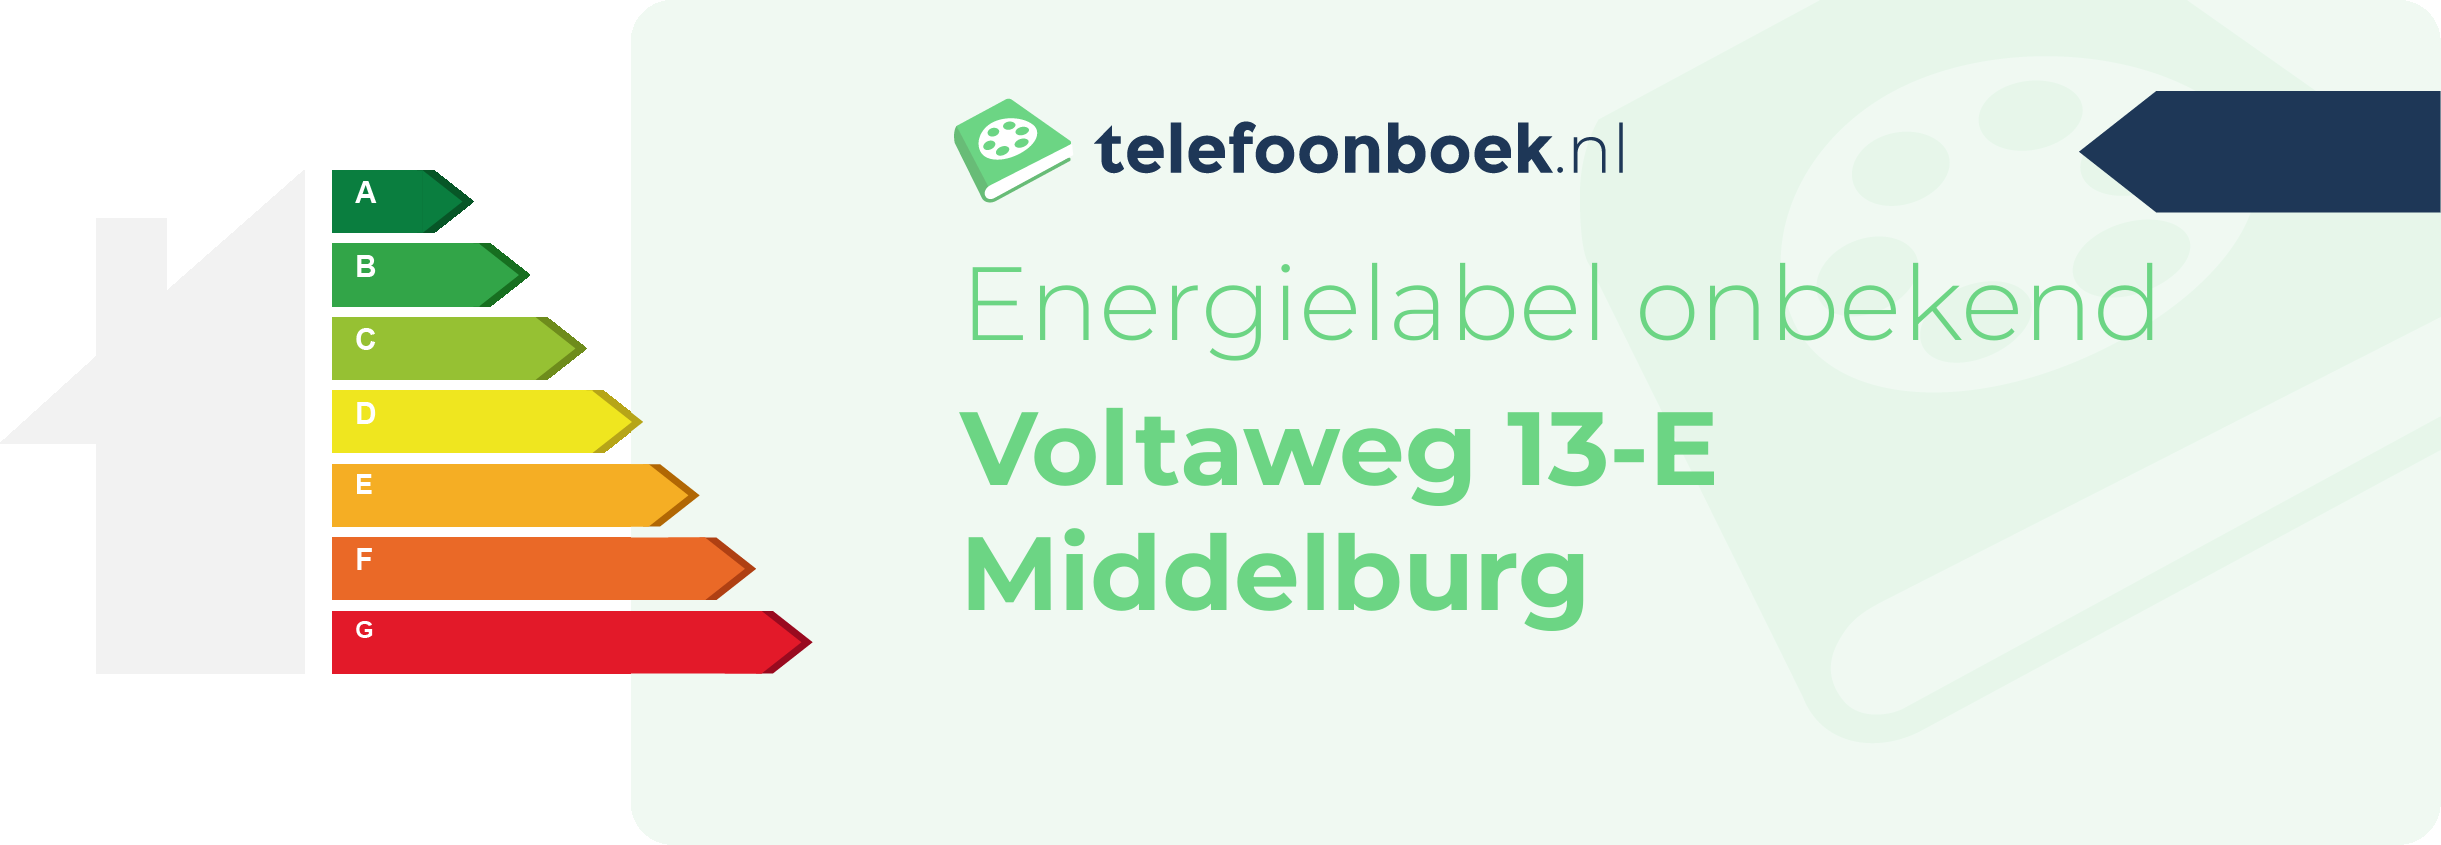 Energielabel Voltaweg 13-E Middelburg